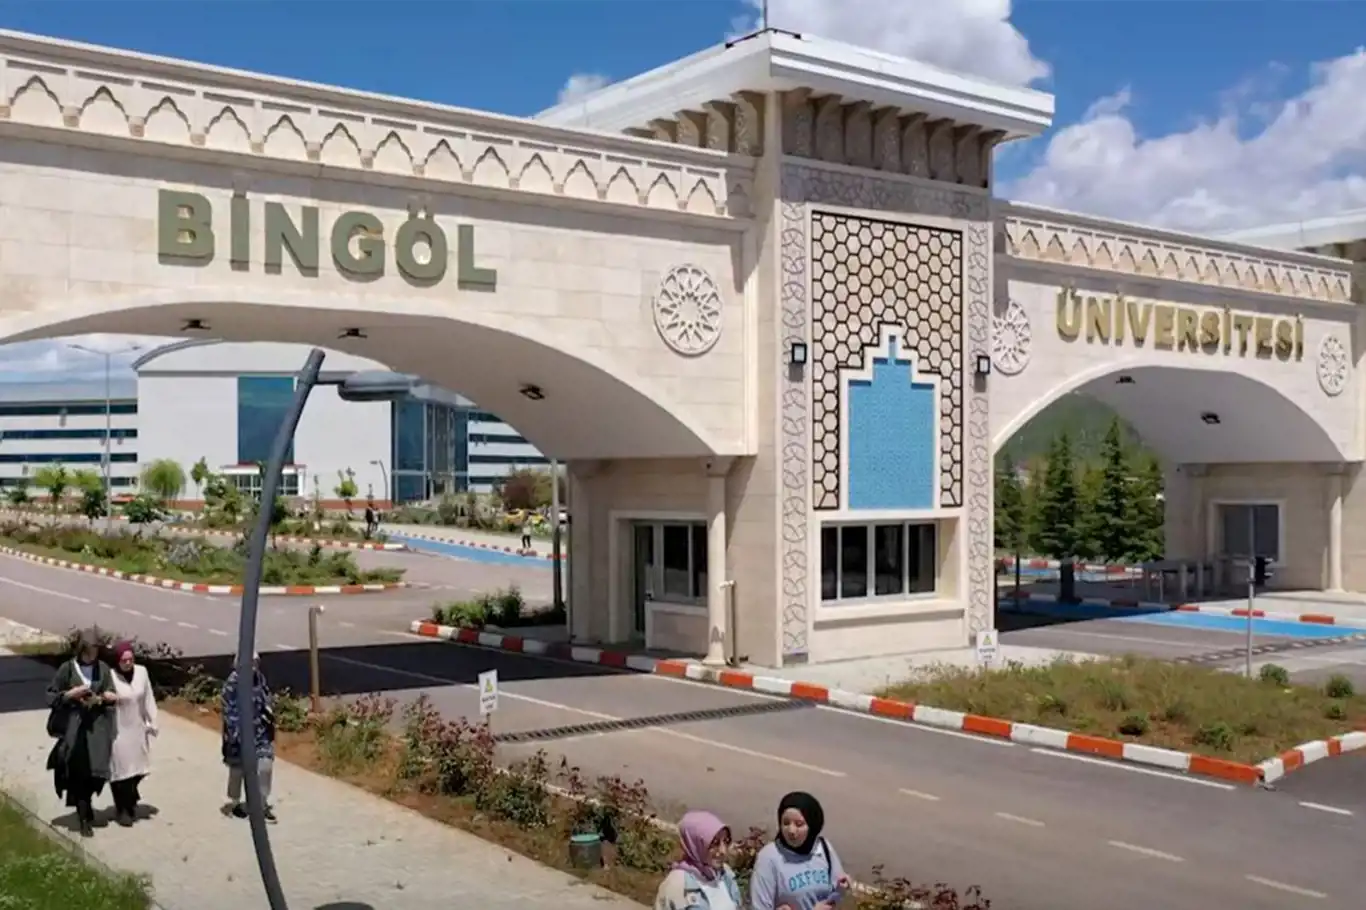 bingol universitesi find and study 3 - دانشگاه بینگول